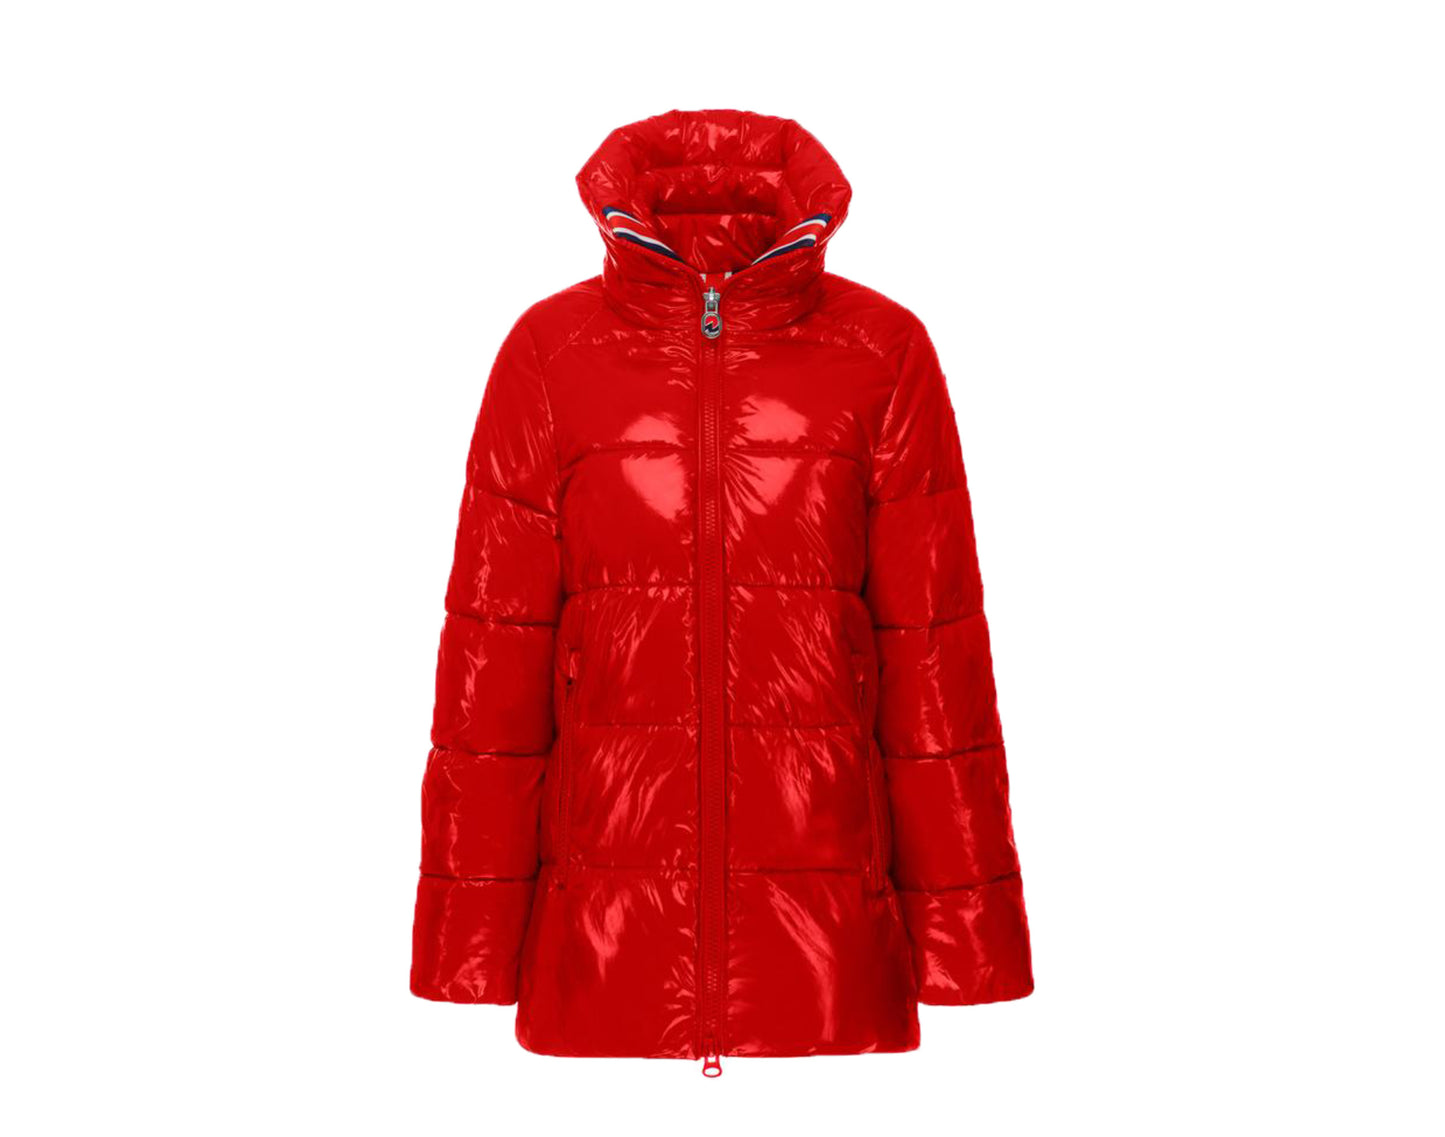 Invicta Leah Contemporary Stylish Coat Women's Jacket